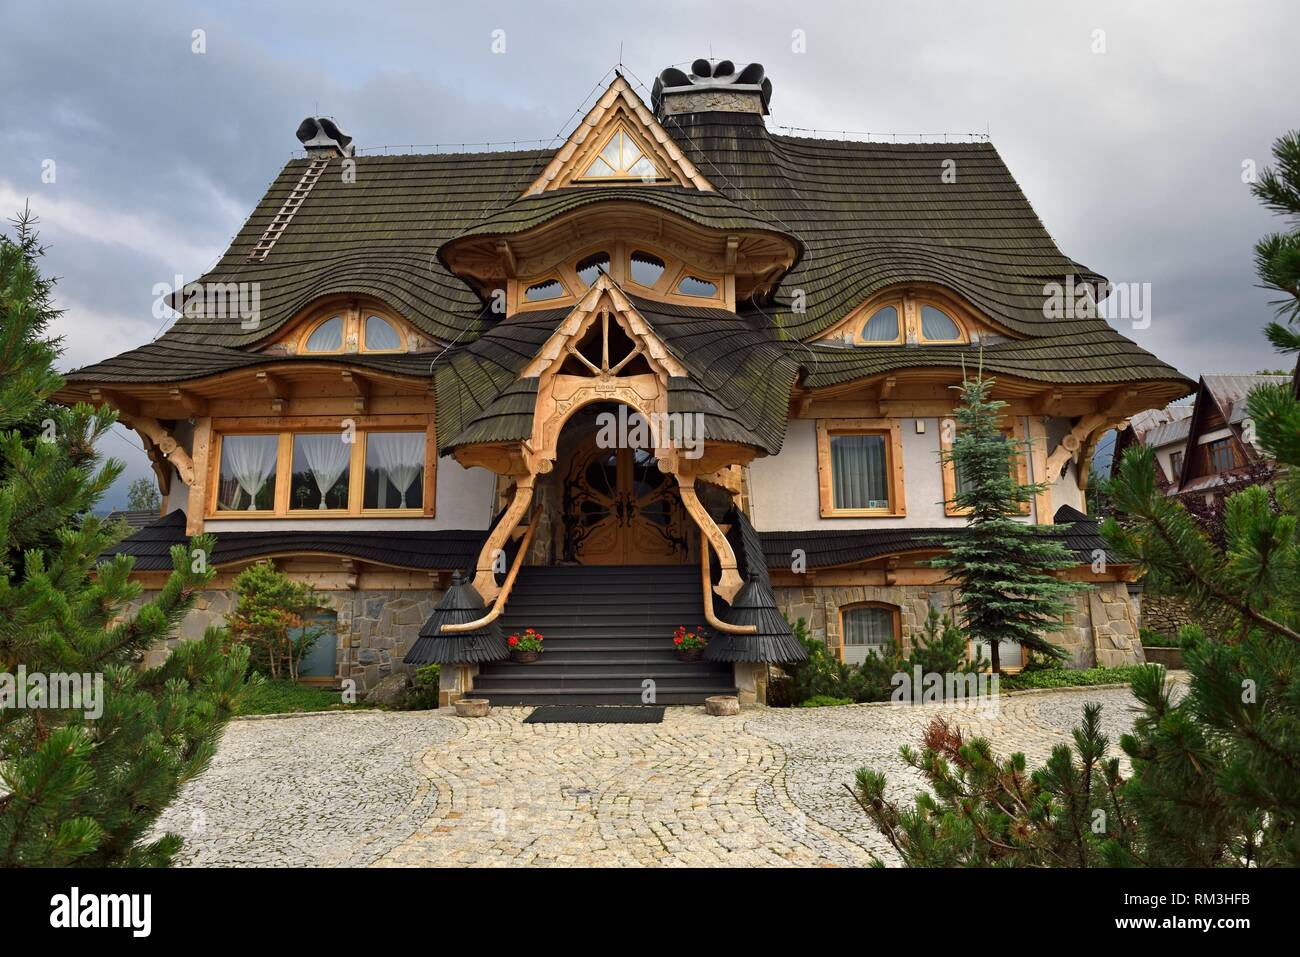 Maison moderne de style Zakopane revisite, Zakopane, la région de Podhale, Massif des Tatras, province de Malopolska (Petite Pologne), Pologne, Europe Banque D'Images